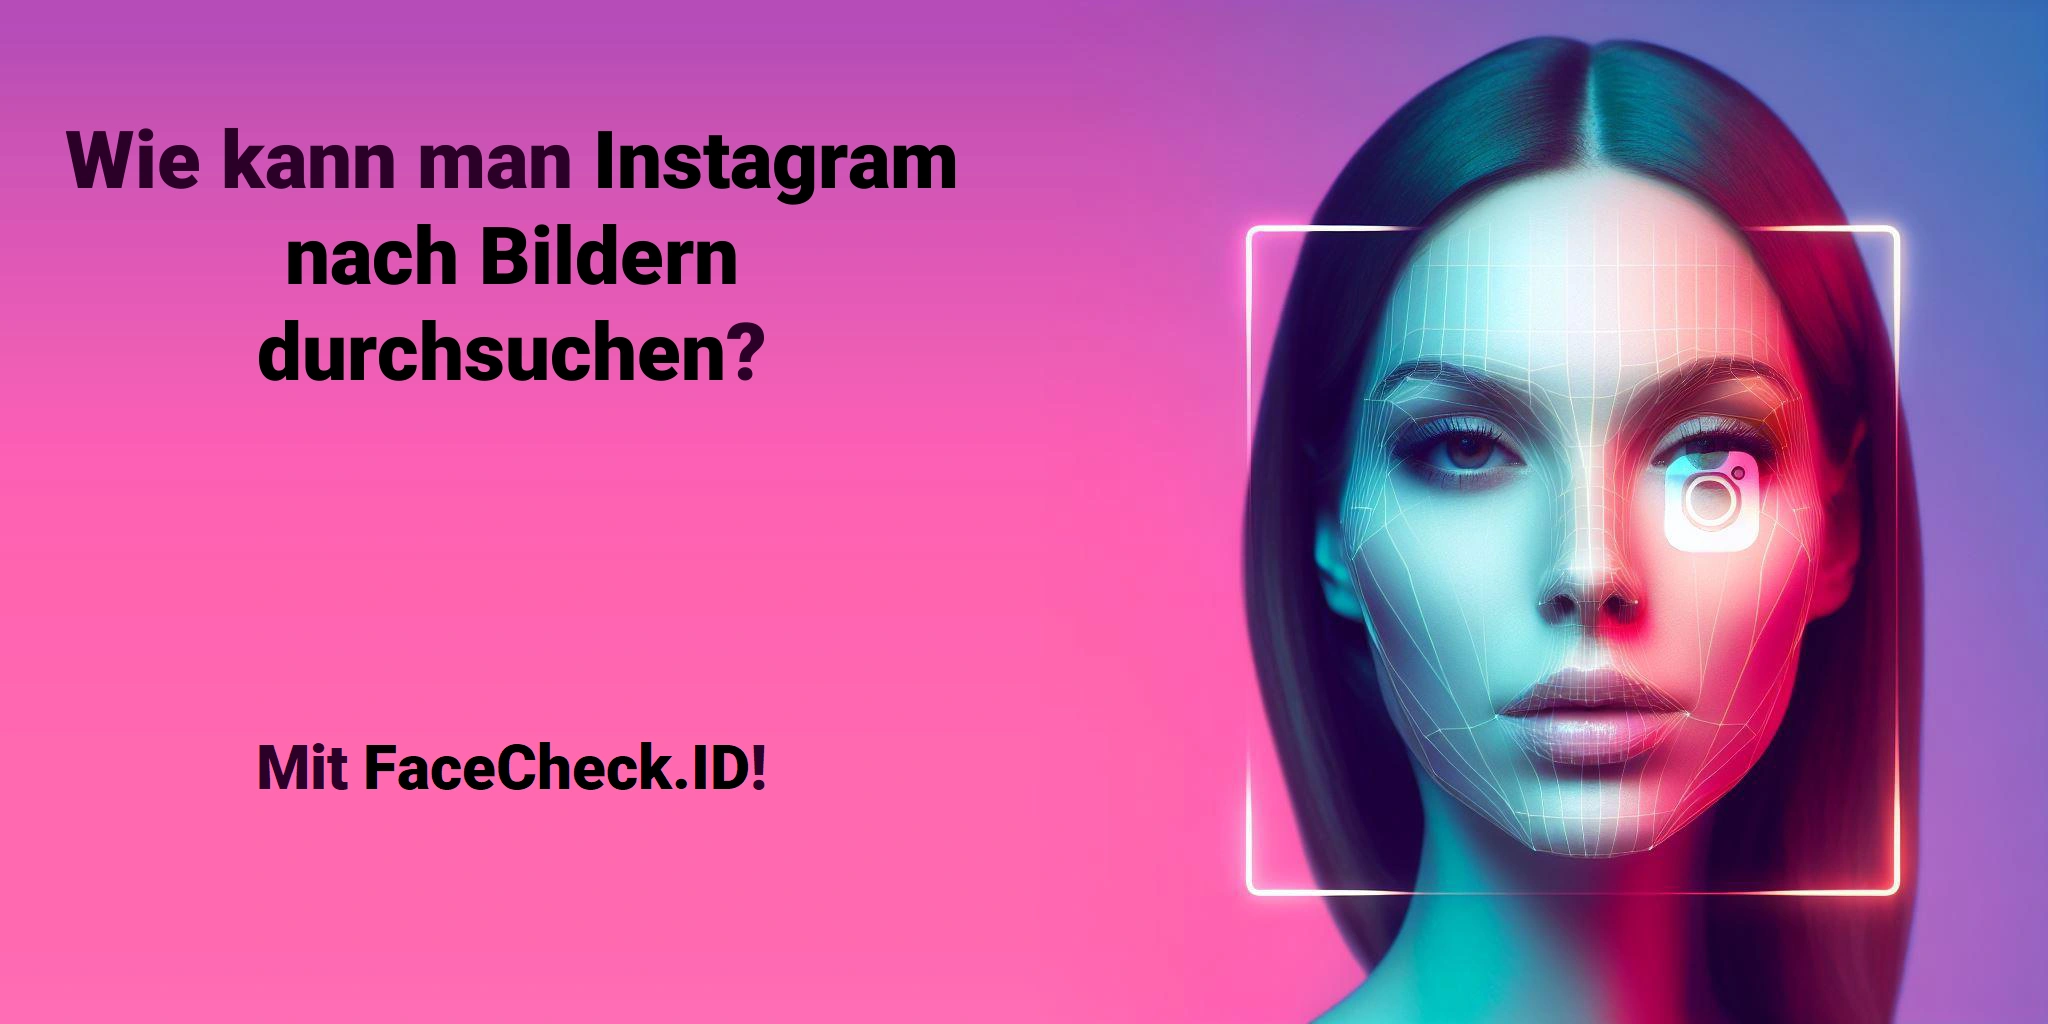 Wie kann man Instagram nach Bildern durchsuchen? Mit FaceCheck.ID!